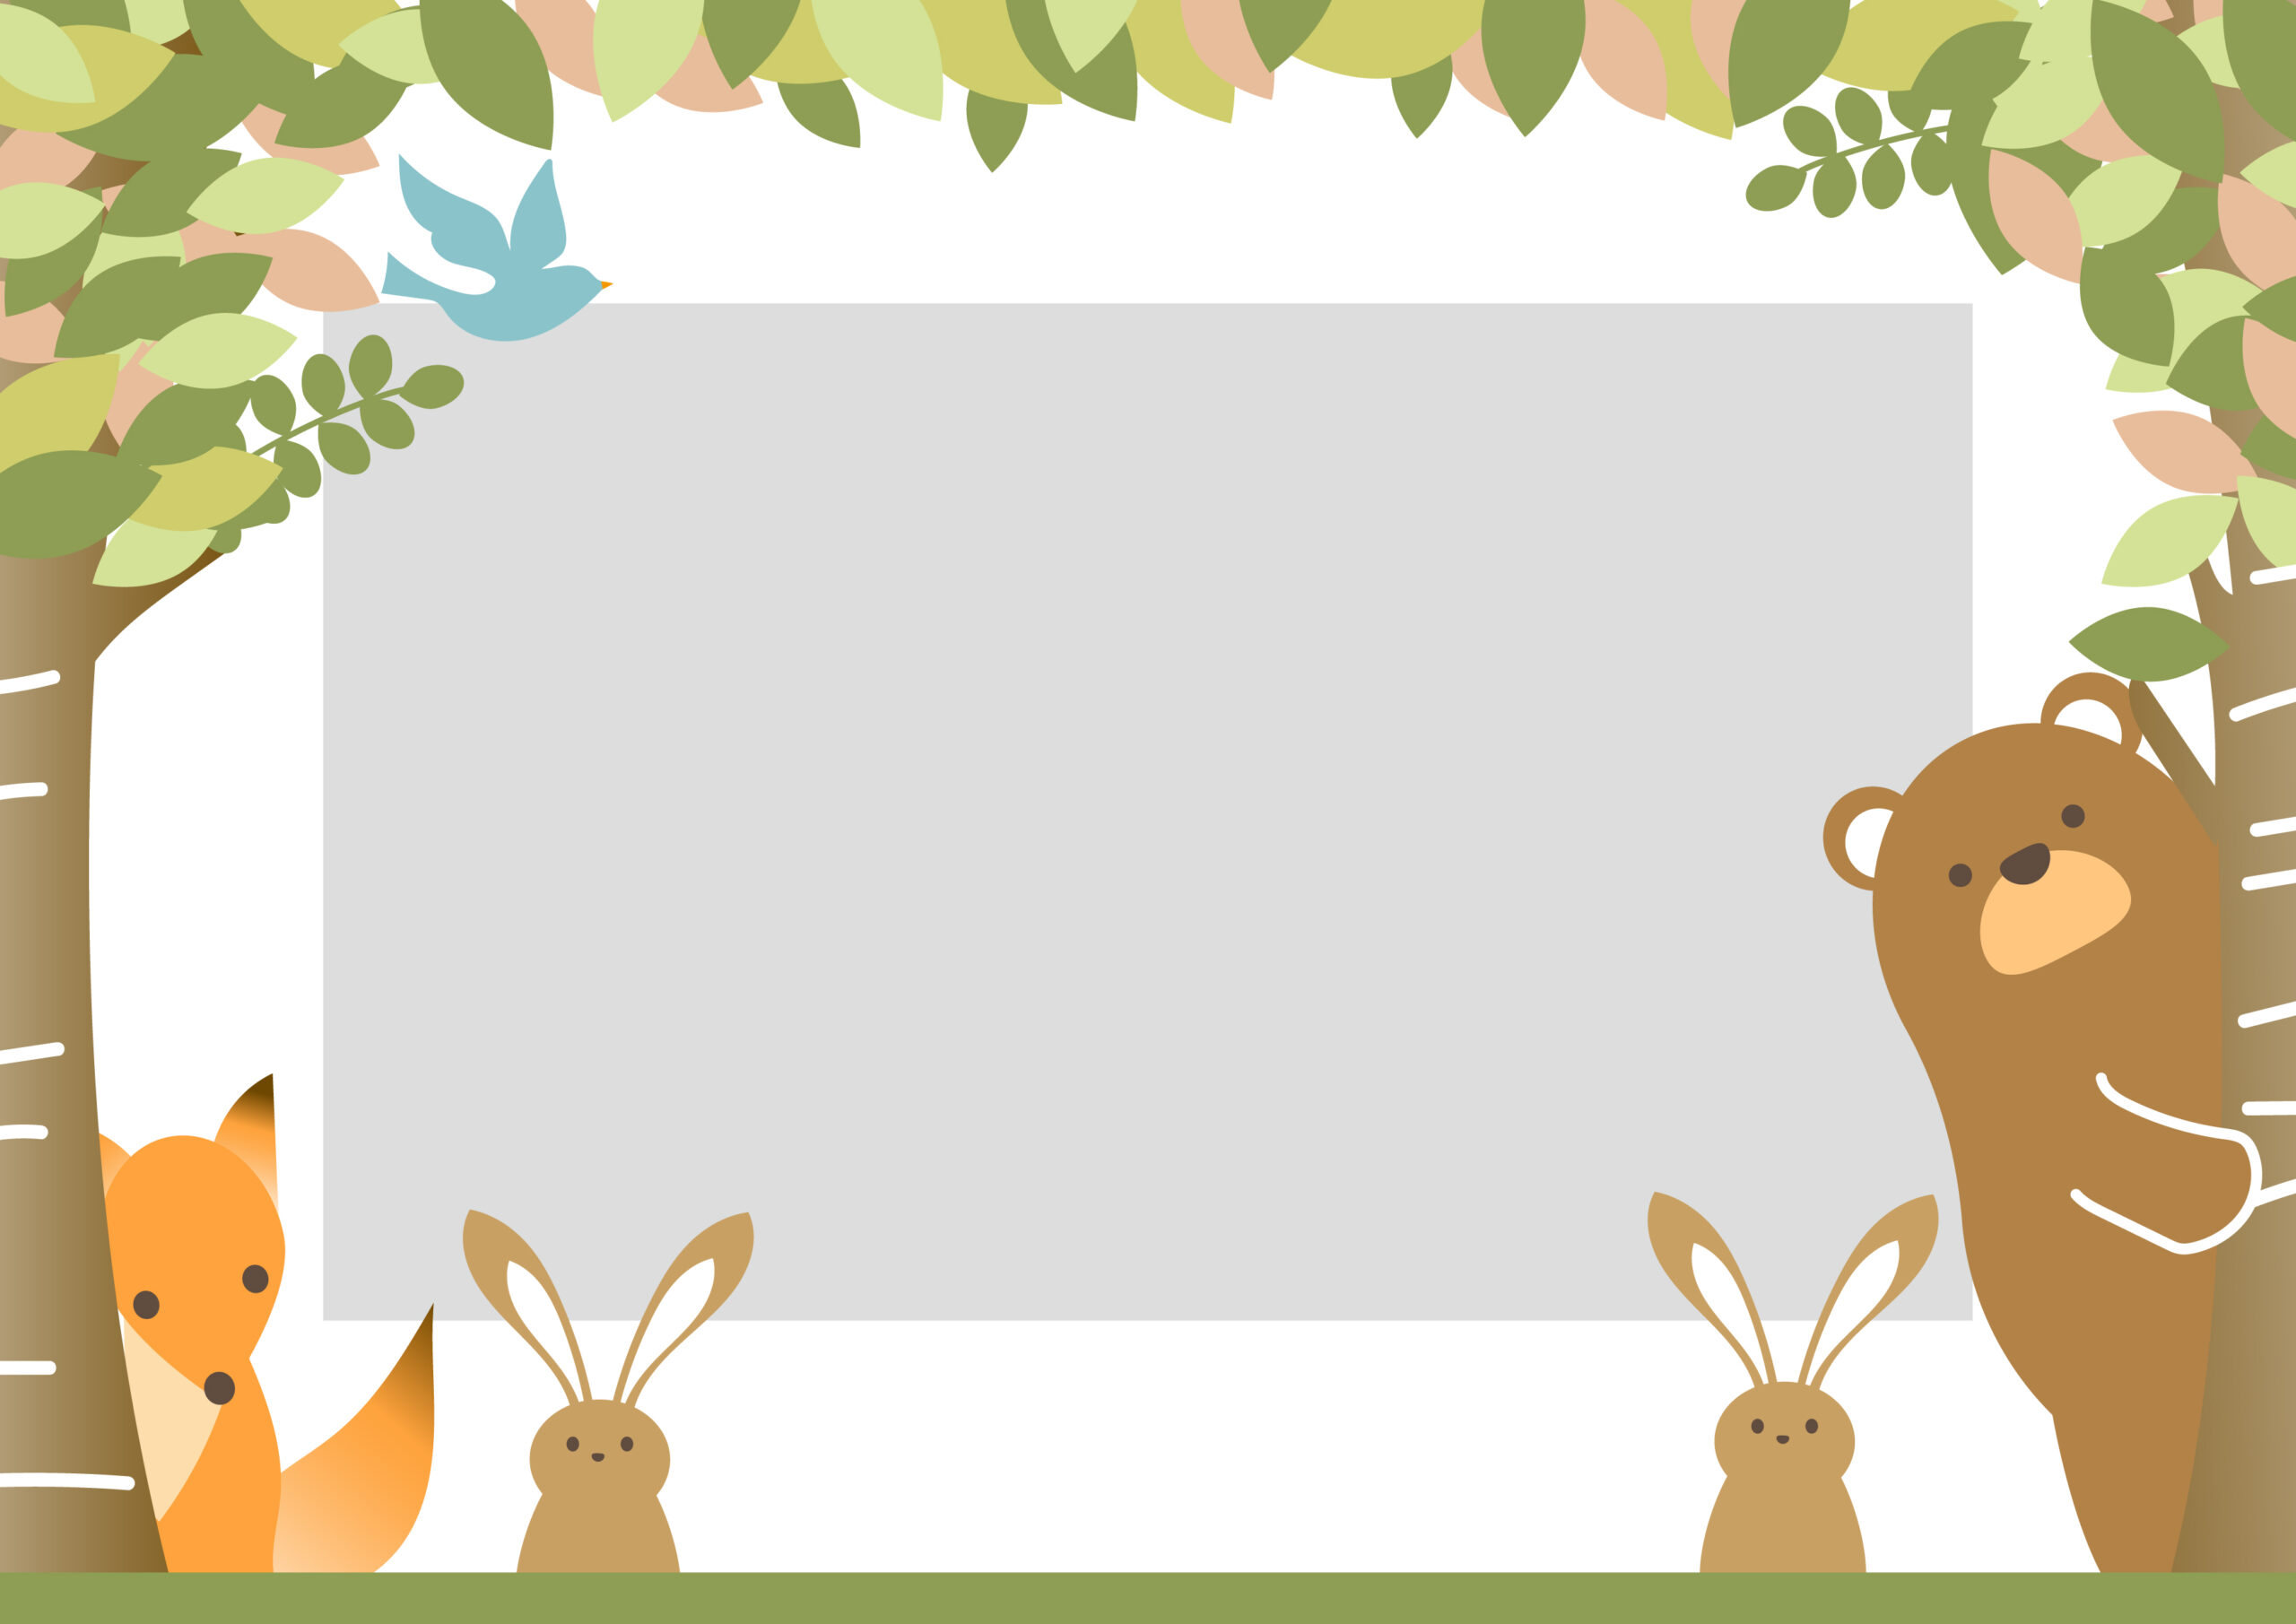 クマやキツネにウサギ、森の動物たちが集まったかわいいフレーム素材です。枠の中に写真を入れるとフォトアルバムとしてご使用いただけます。幼稚園や保育園の掃除の呼びかけなどの張り紙にもおすすめの飾り枠となっております。ダウンロード：JPG